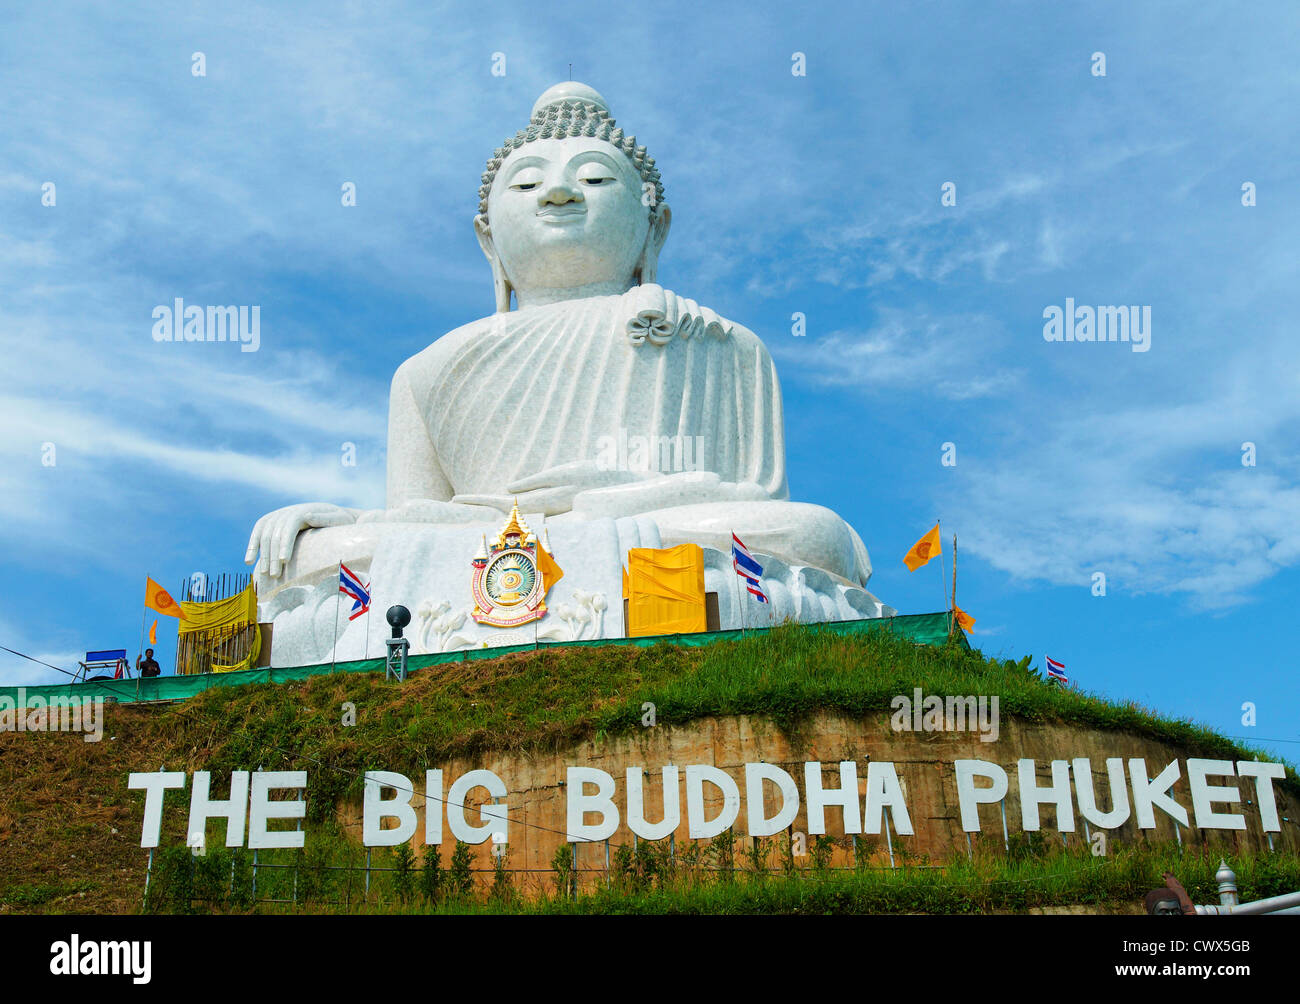 Massive weiße Marmor Buddha-Statue und touristische Destination auf Hügel in Phuket, Thailand. Stockfoto